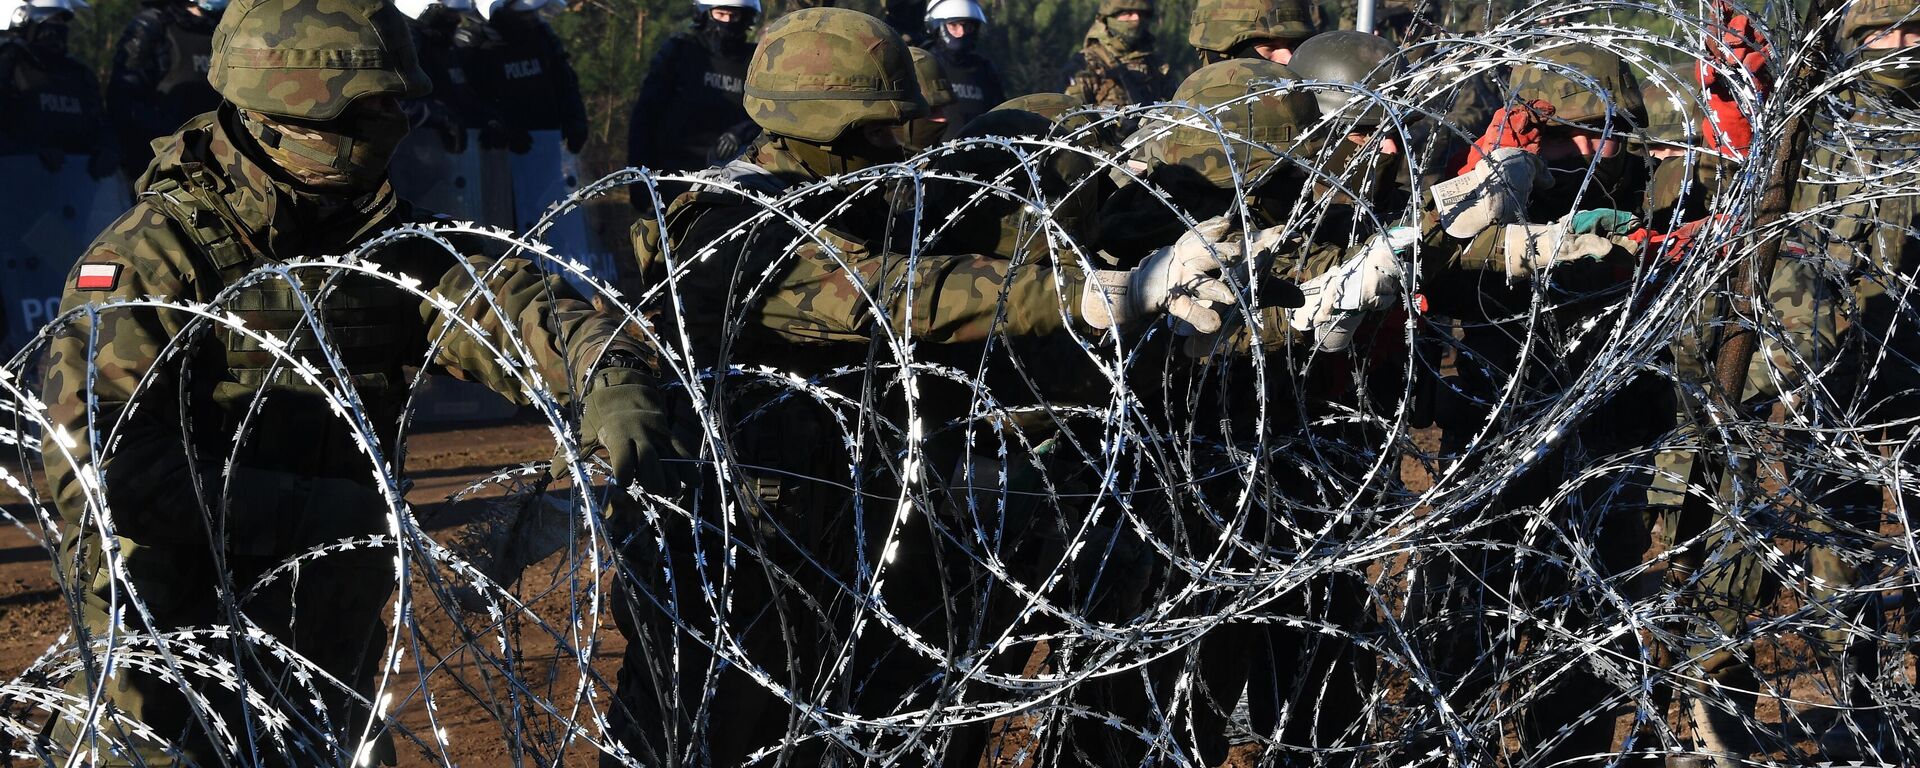 Польские военнослужащие устанавливают забор из колючей проволоки на польско-белорусской границе - Sputnik Латвия, 1920, 20.12.2021